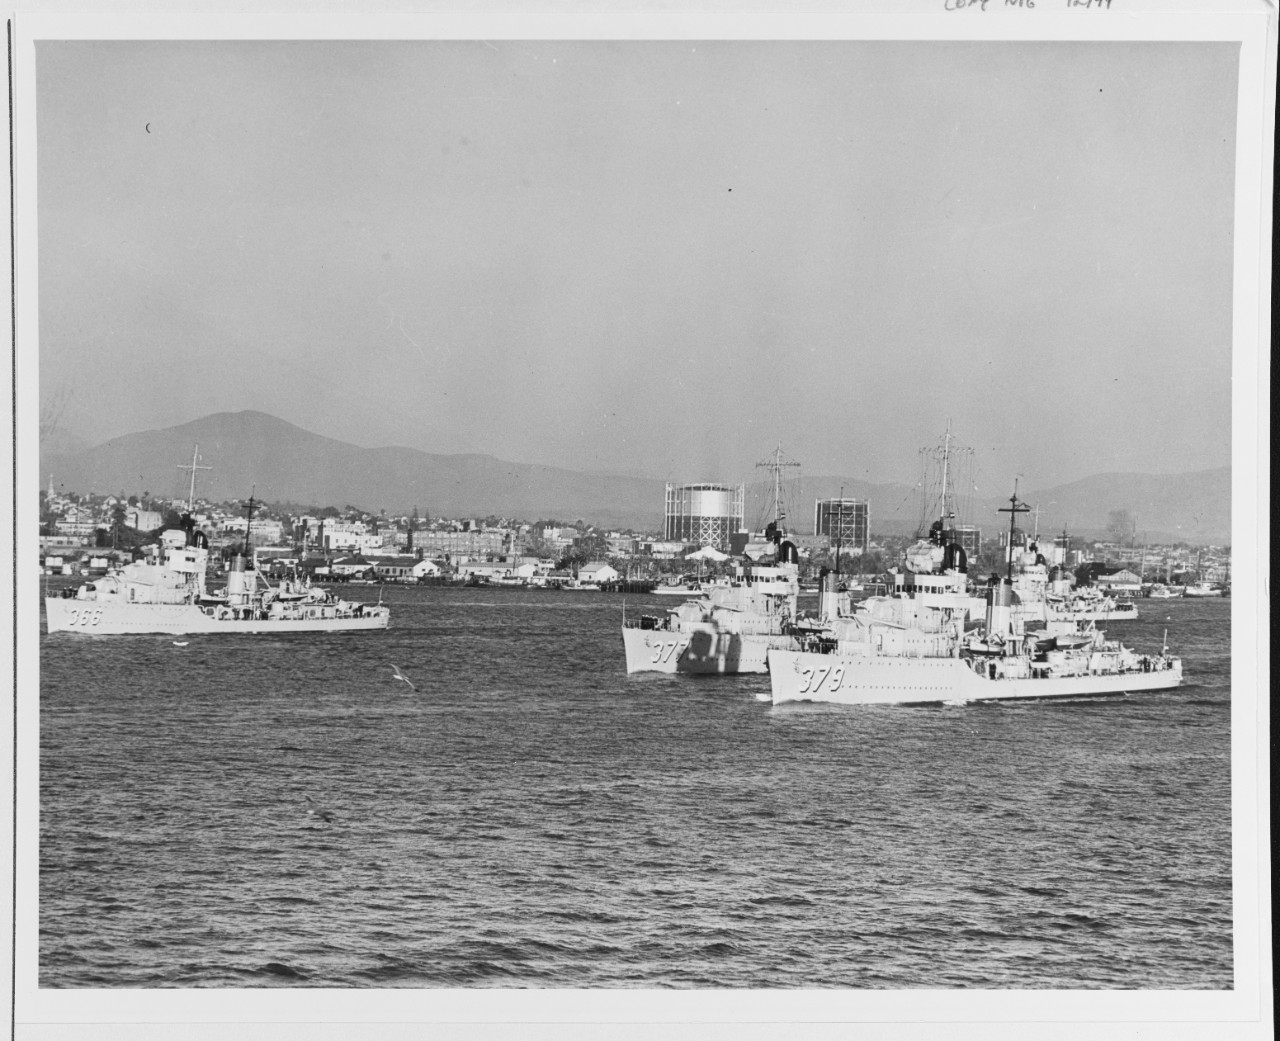 Photo #: 80-G-1031563  Destroyers underway in San Diego Harbor, California, 1938